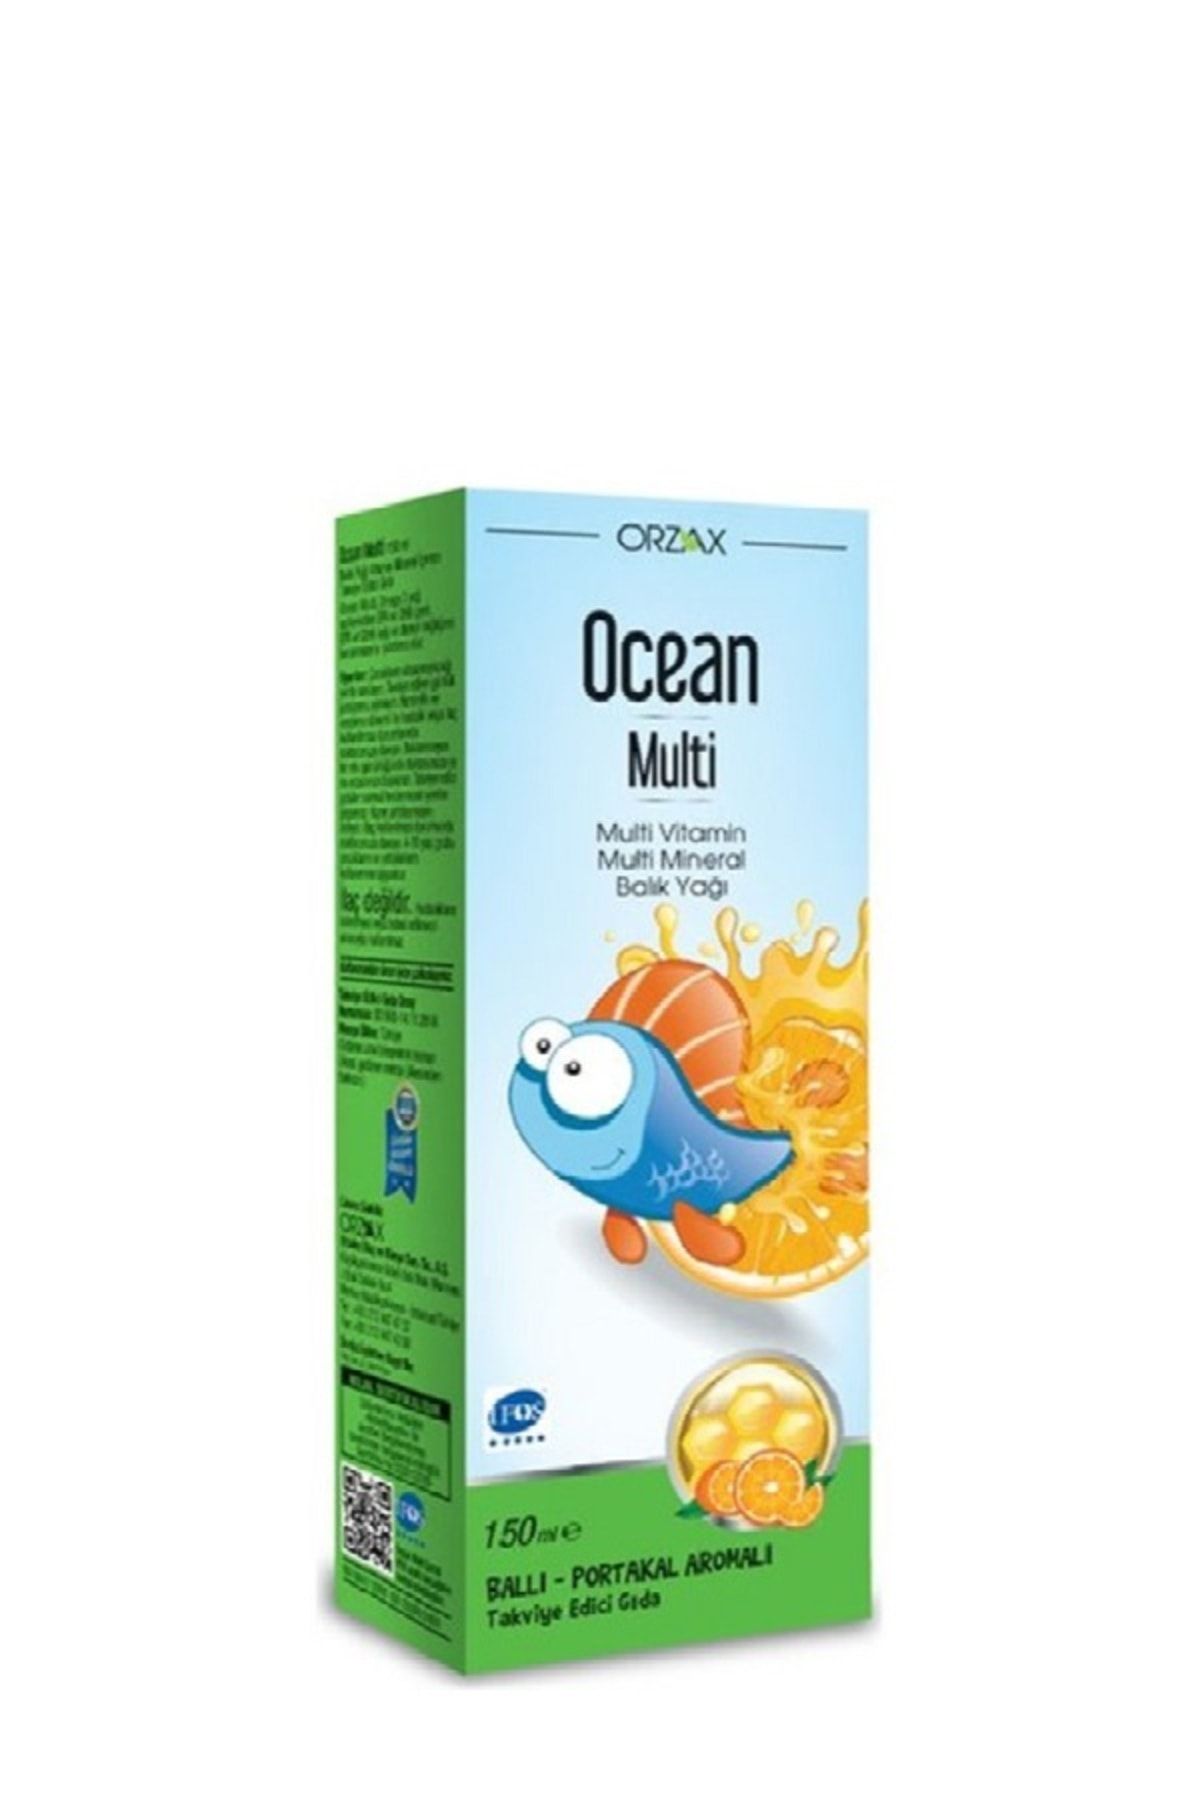 Ocean Ocean Multi Şurup Ballı Portakal Aromalı Balık Yağı 150 Ml